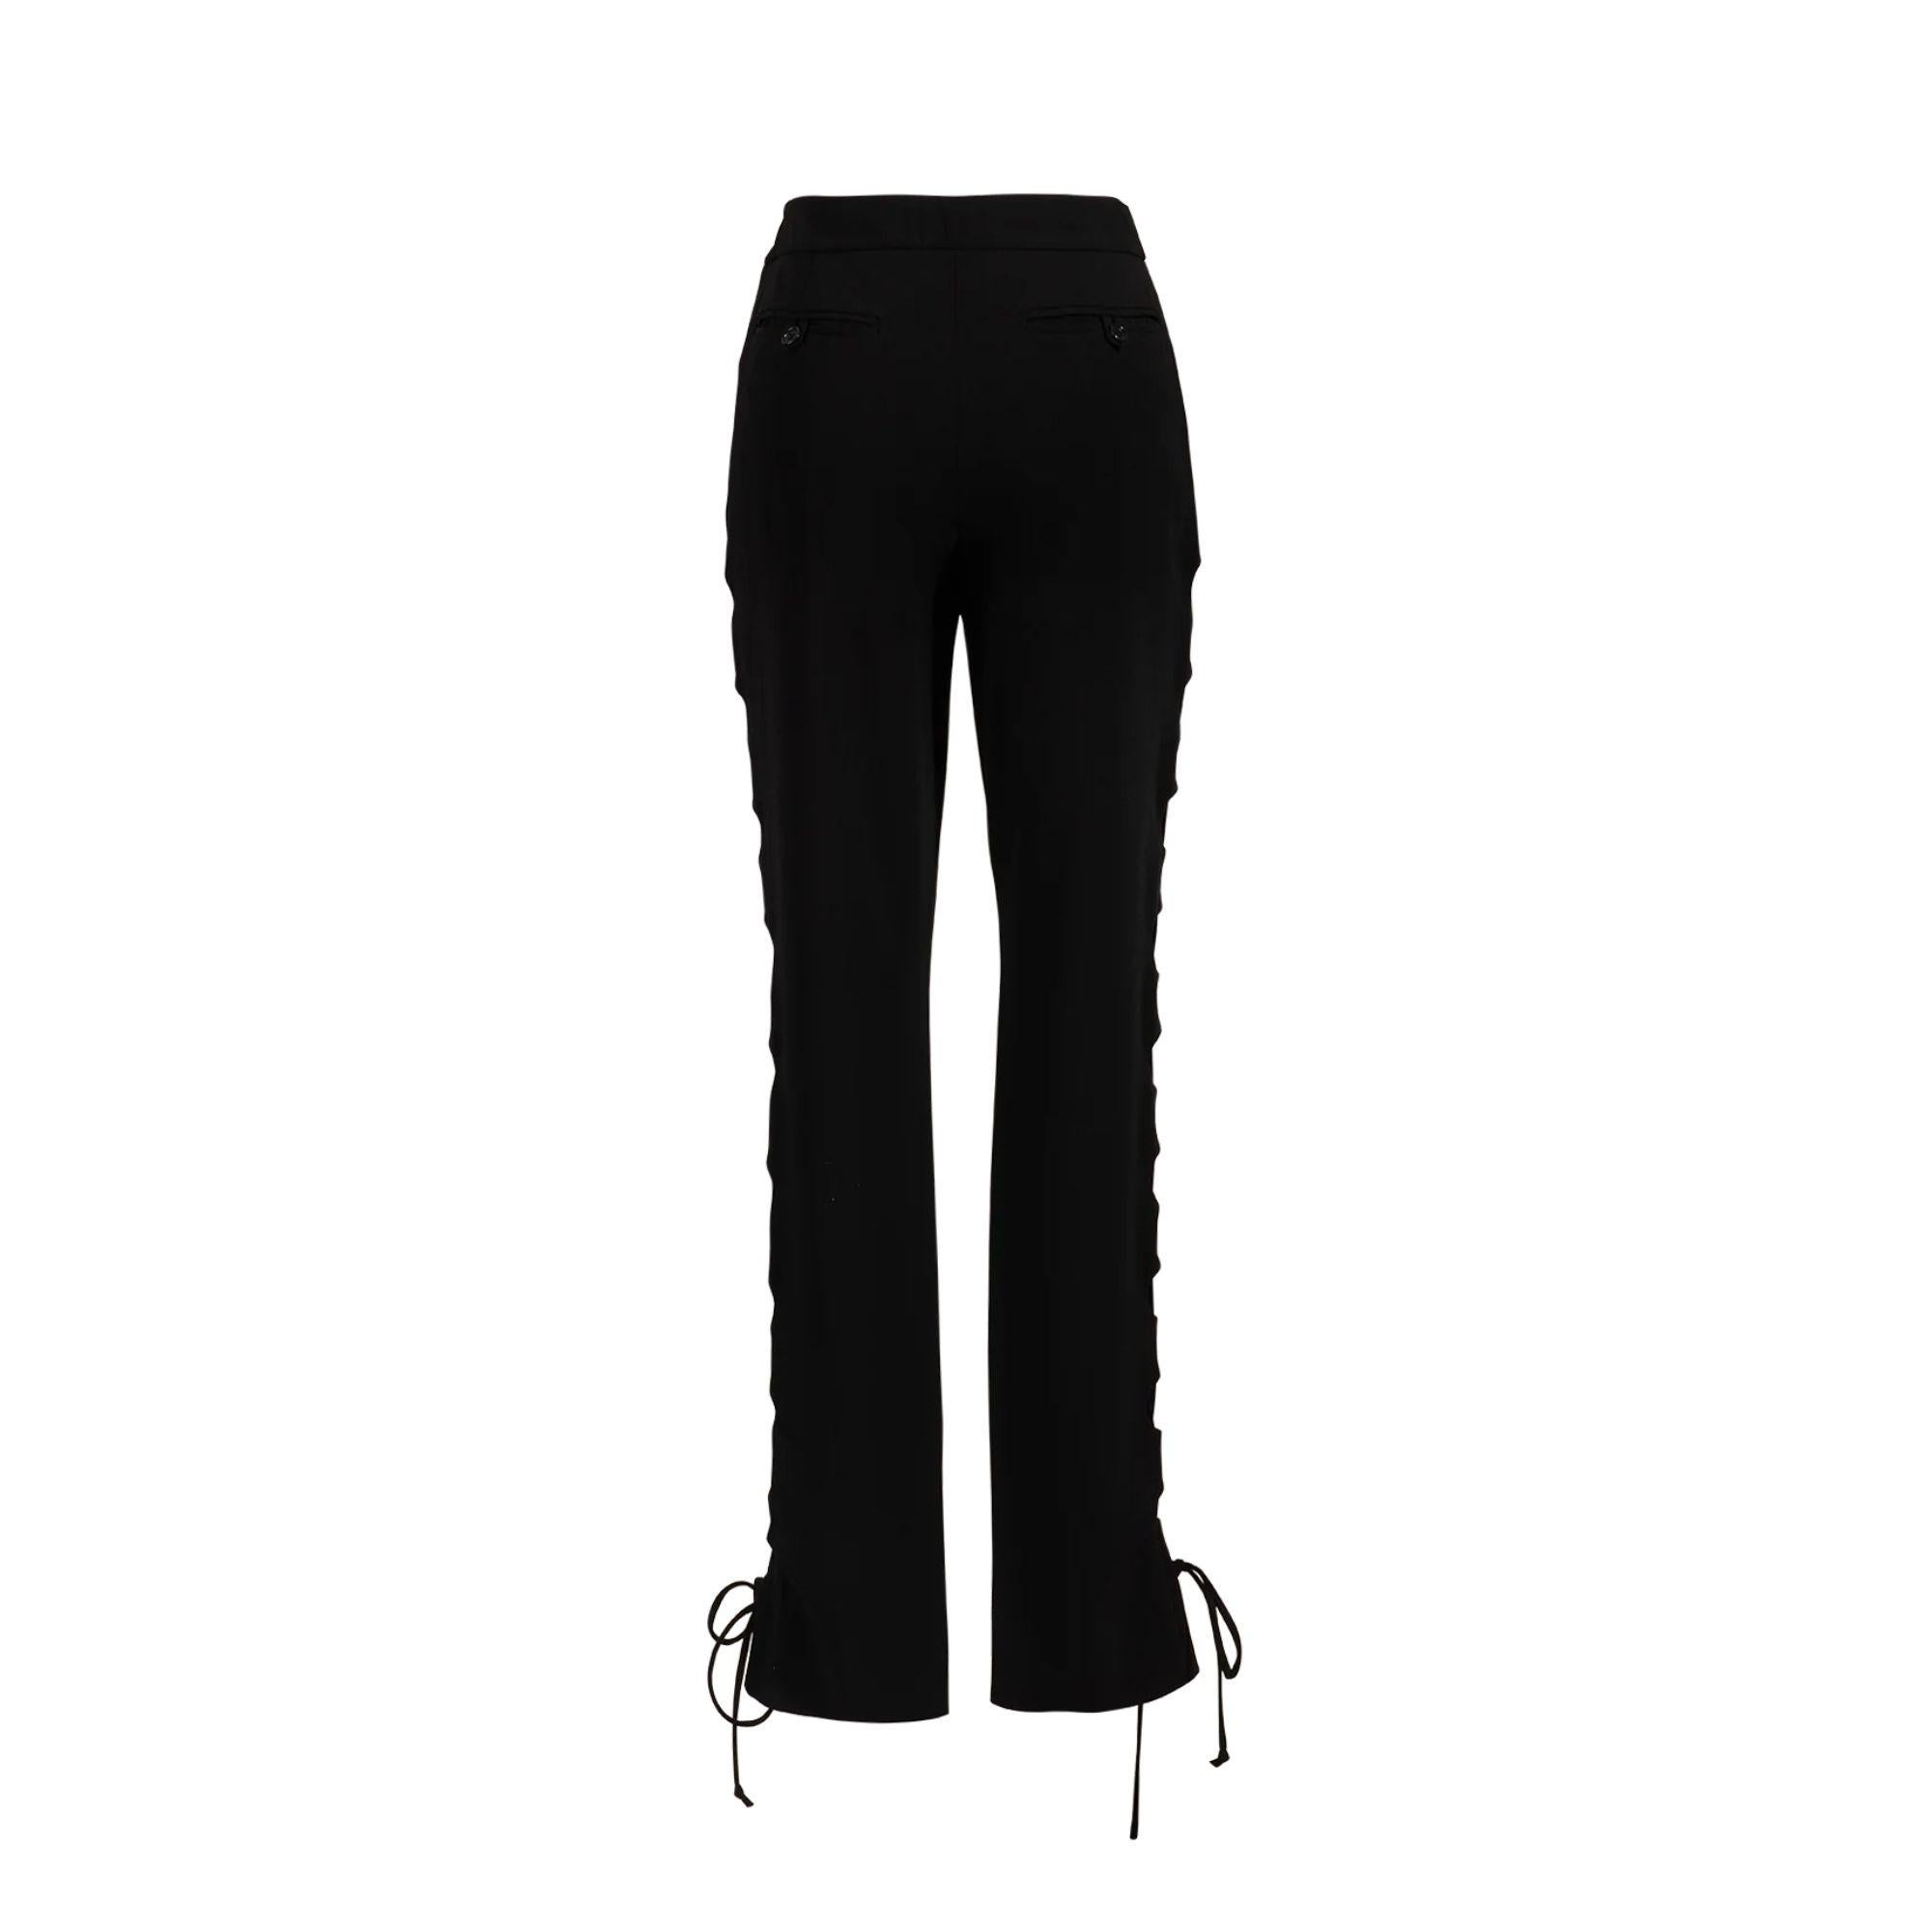 Women's S/S 2001 Helmut Lang Black Side Cutout Pants